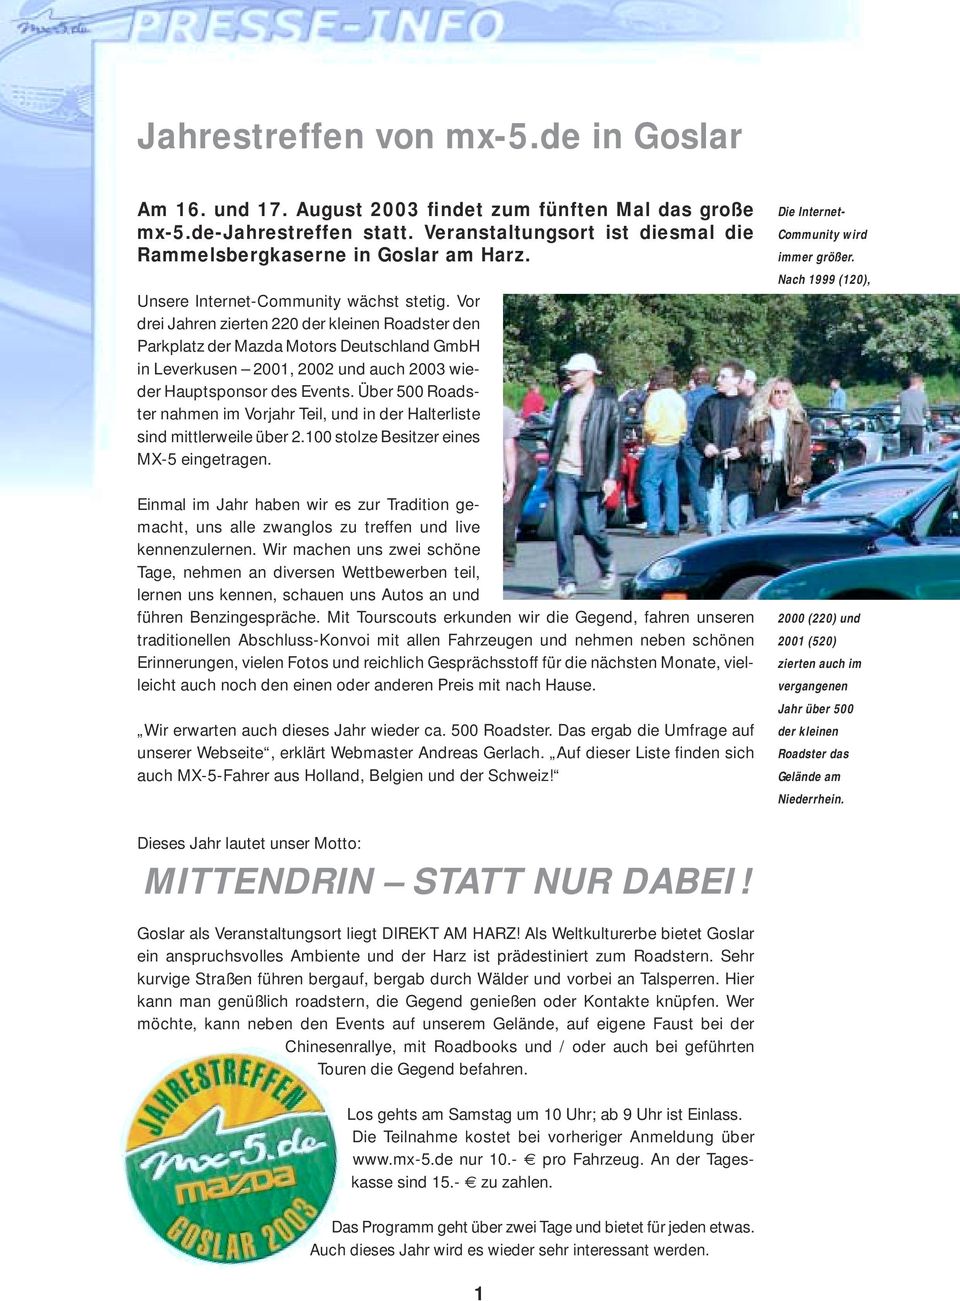 Vor drei Jahren zierten 220 der kleinen Roadster den Parkplatz der Mazda Motors Deutschland GmbH in Leverkusen 2001, 2002 und auch 2003 wieder Hauptsponsor des Events.